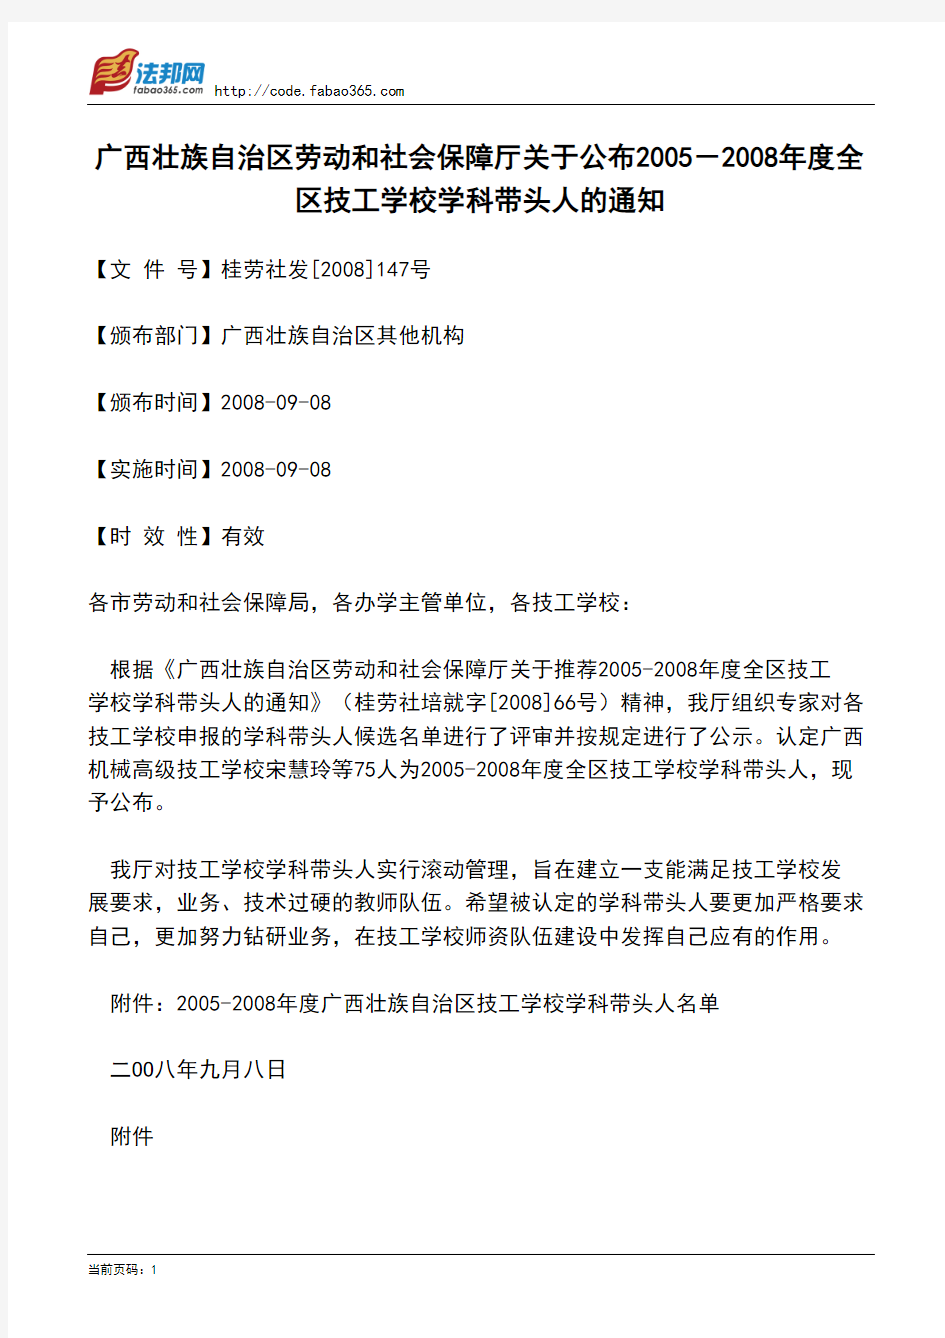 广西壮族自治区劳动和社会保障厅关于公布2005-2008年度全区技工学校学科带头人的通知